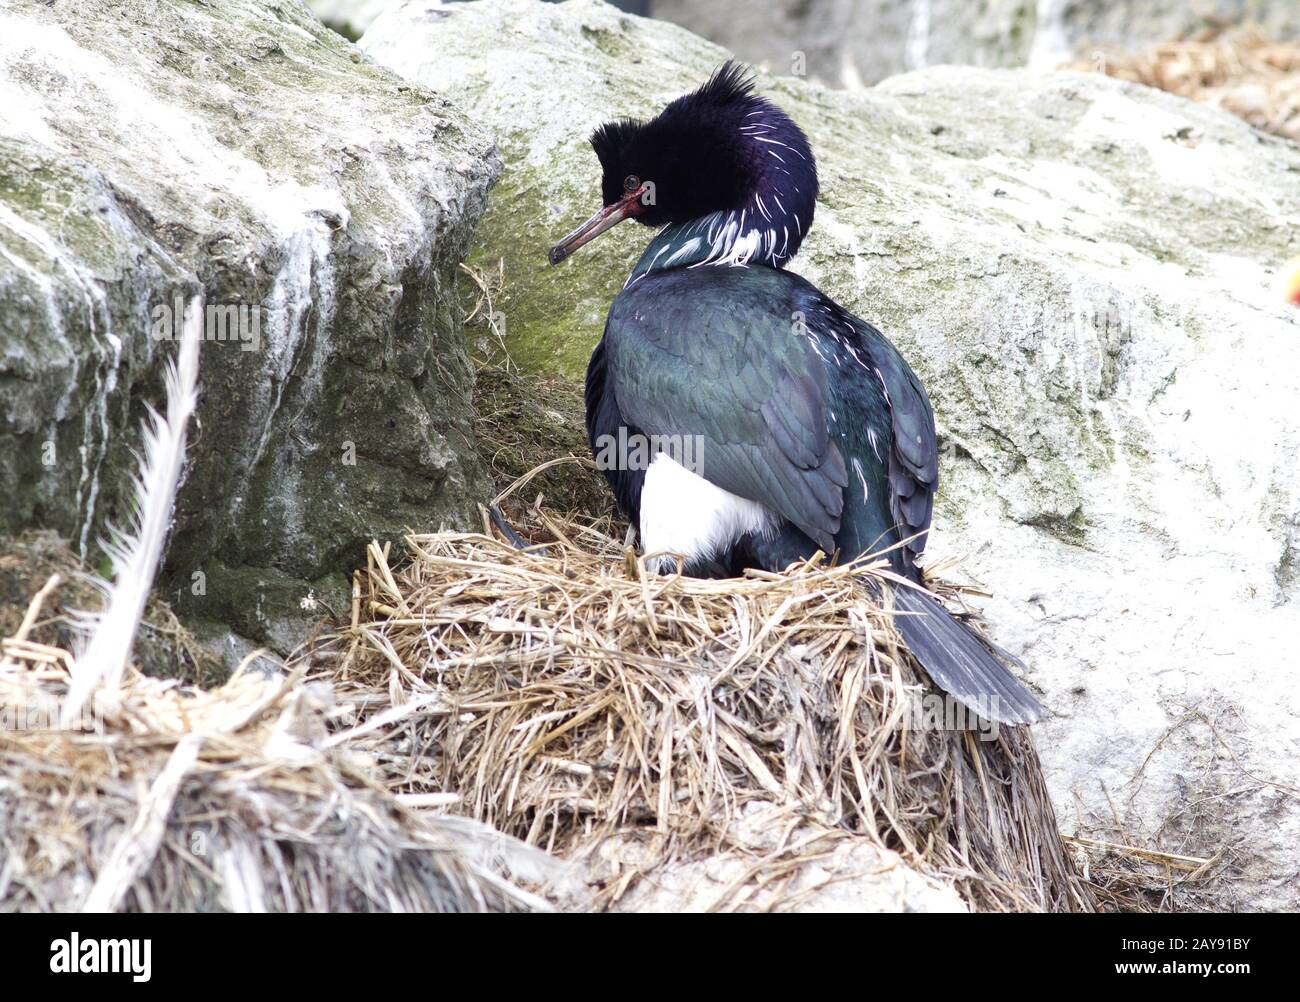 Pelagische Kormoran sitzt im Nest in einer Kolonie von Seevögeln Stockfoto